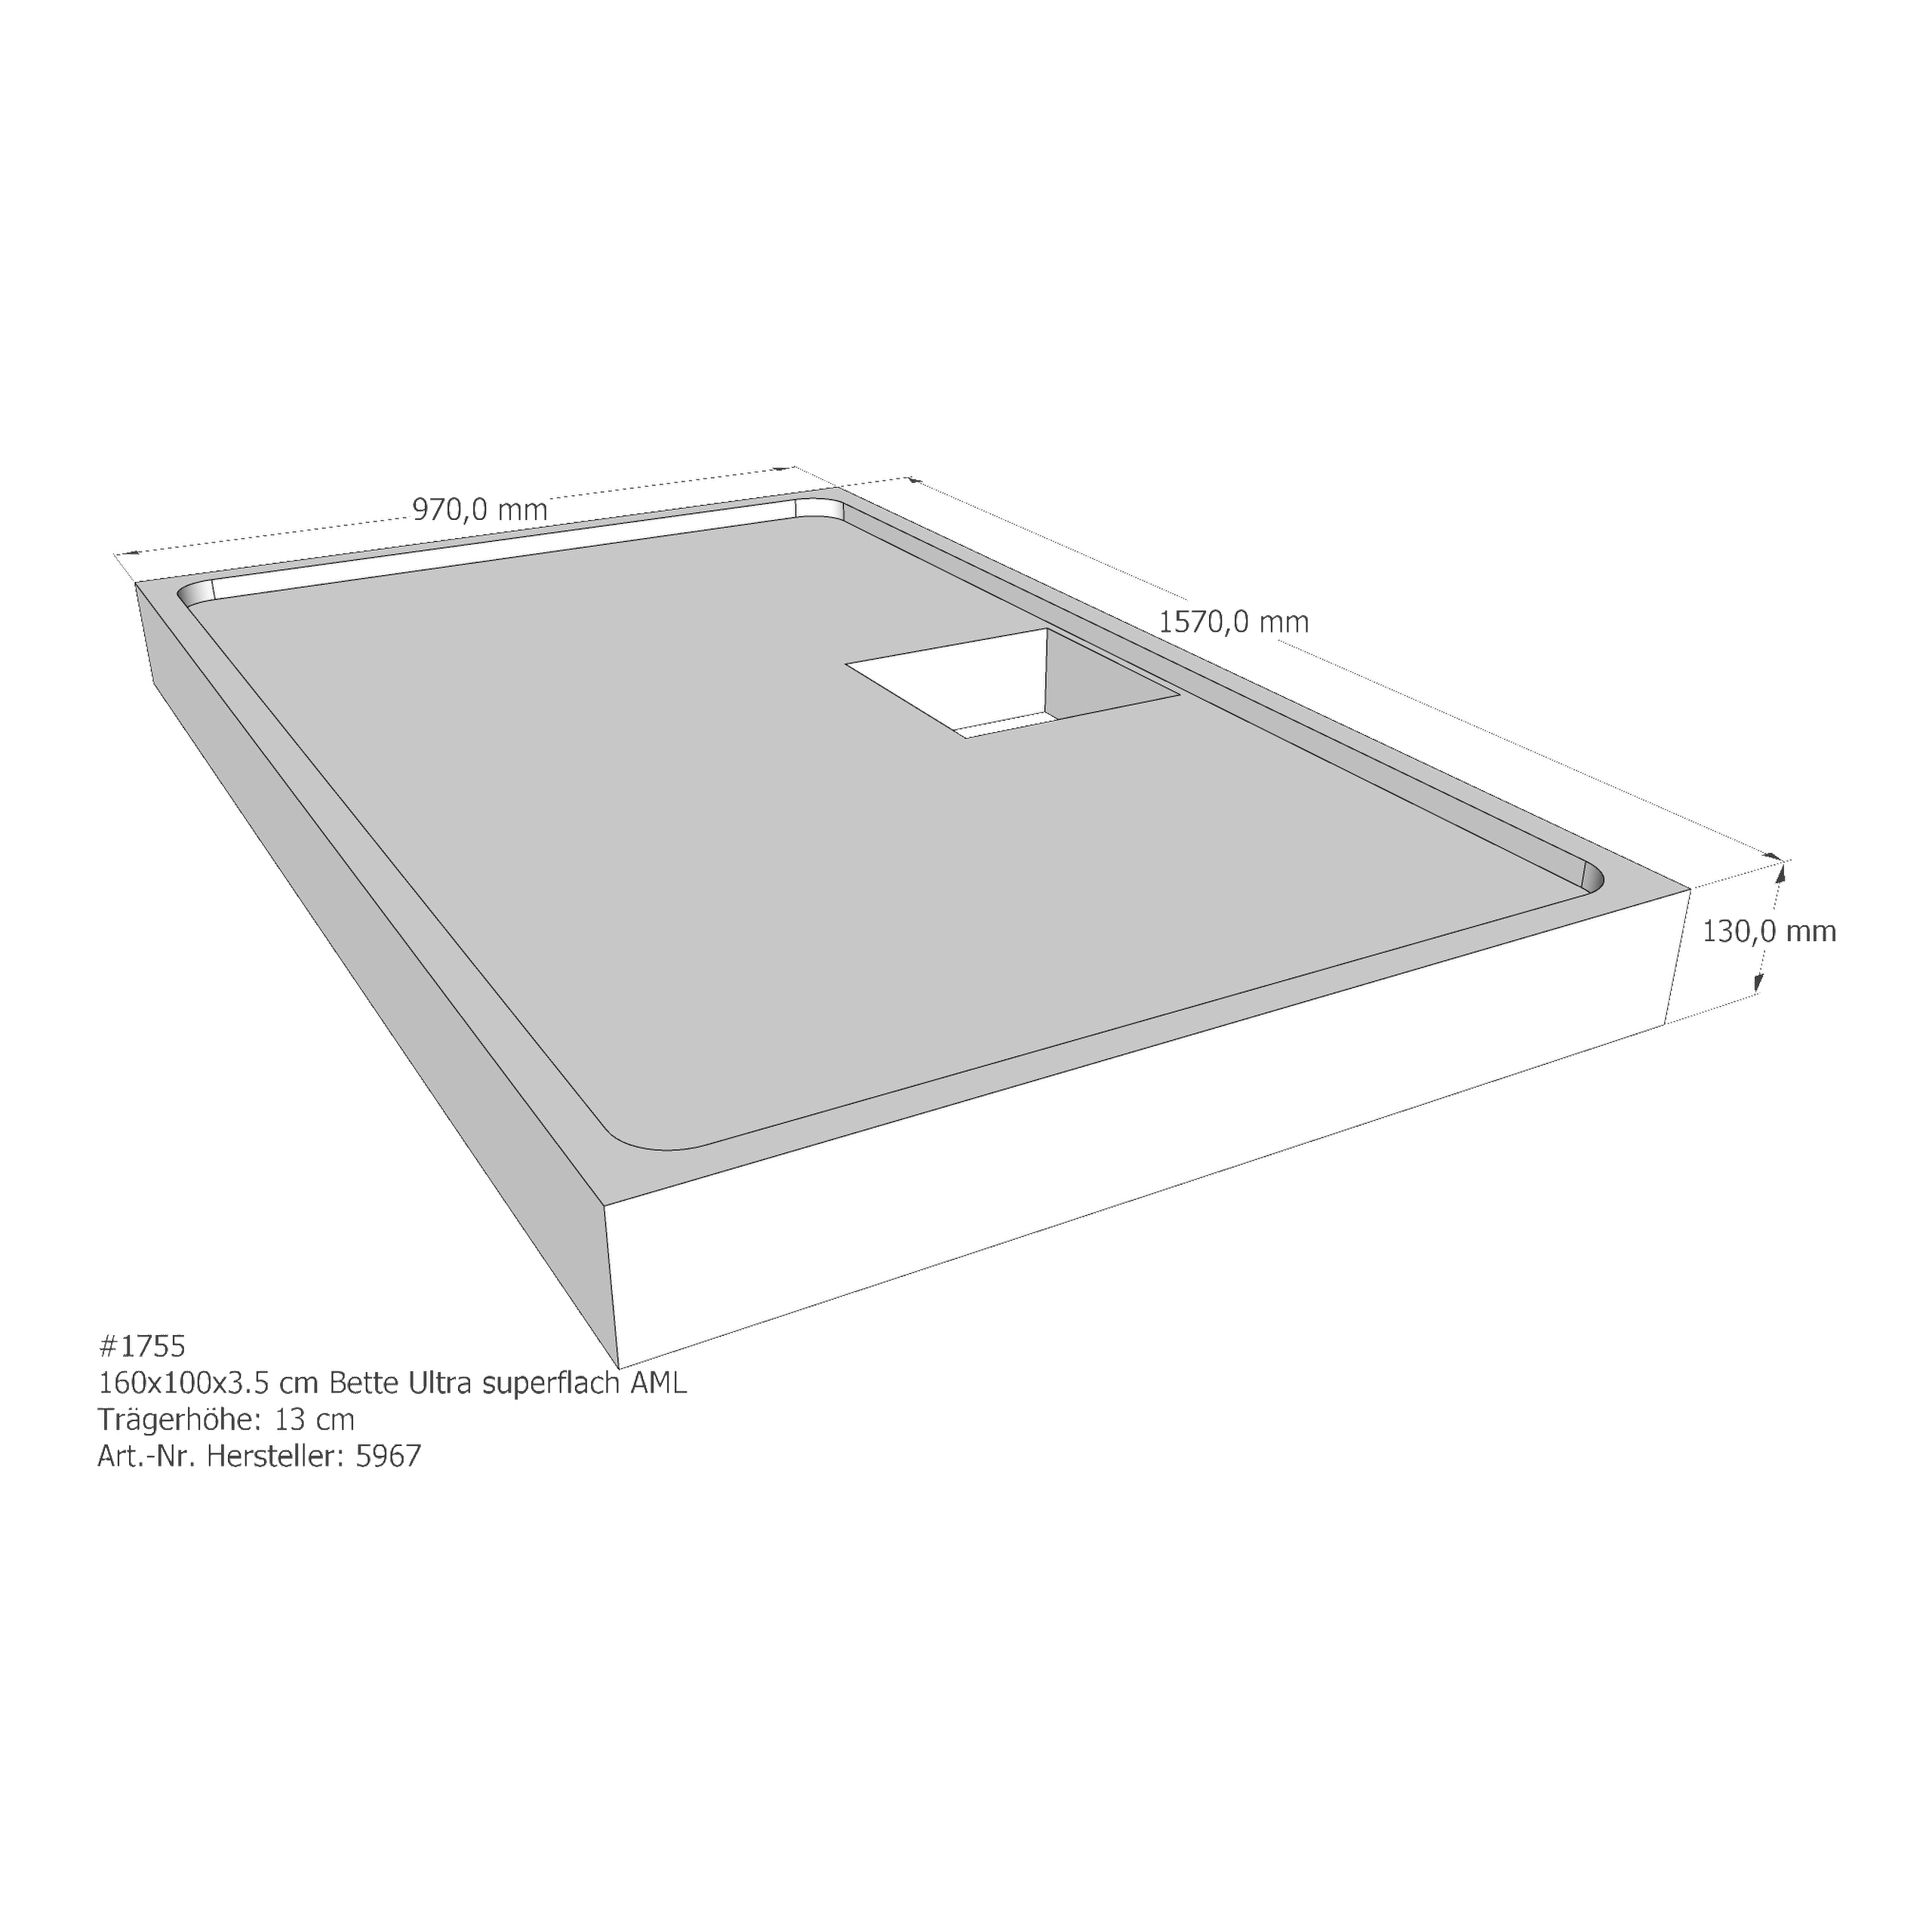 Duschwannenträger Bette BetteUltra (superflach) 160x100x3,5 cm AML210